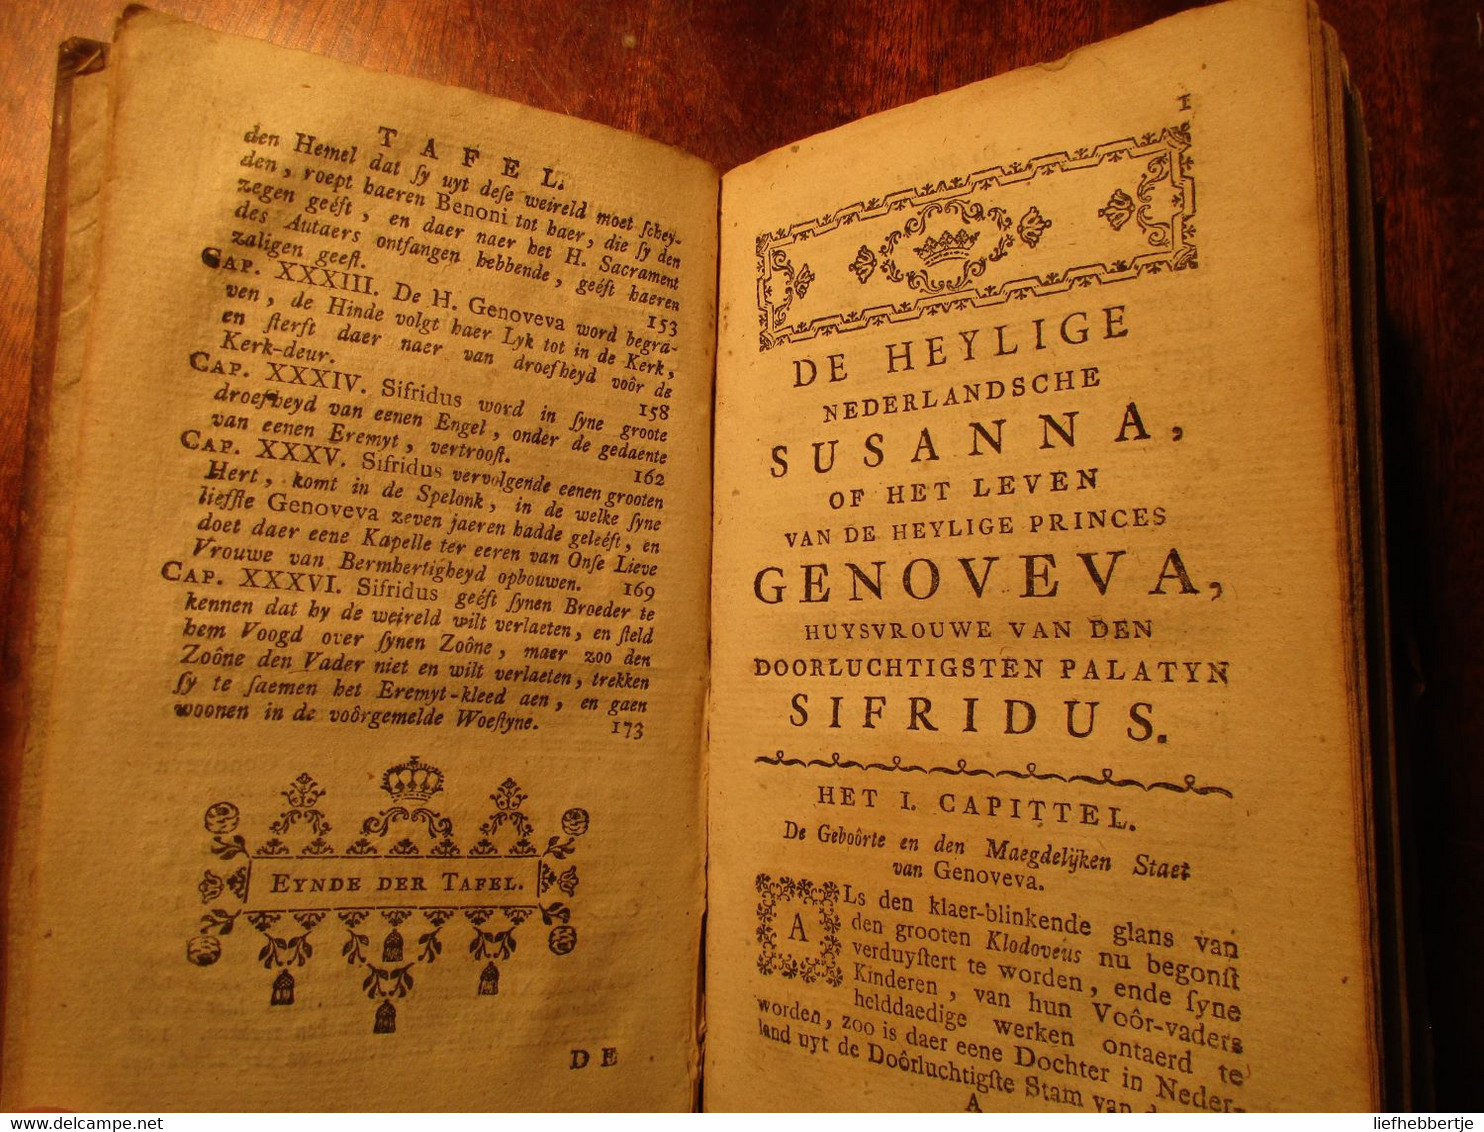 Het Leven Van De Heylige Nederlandsche Susanna, Of Genoveva, Huysvrouwe Van ... Sifridus - 1743 - Door De Ceriziers - Vecchi